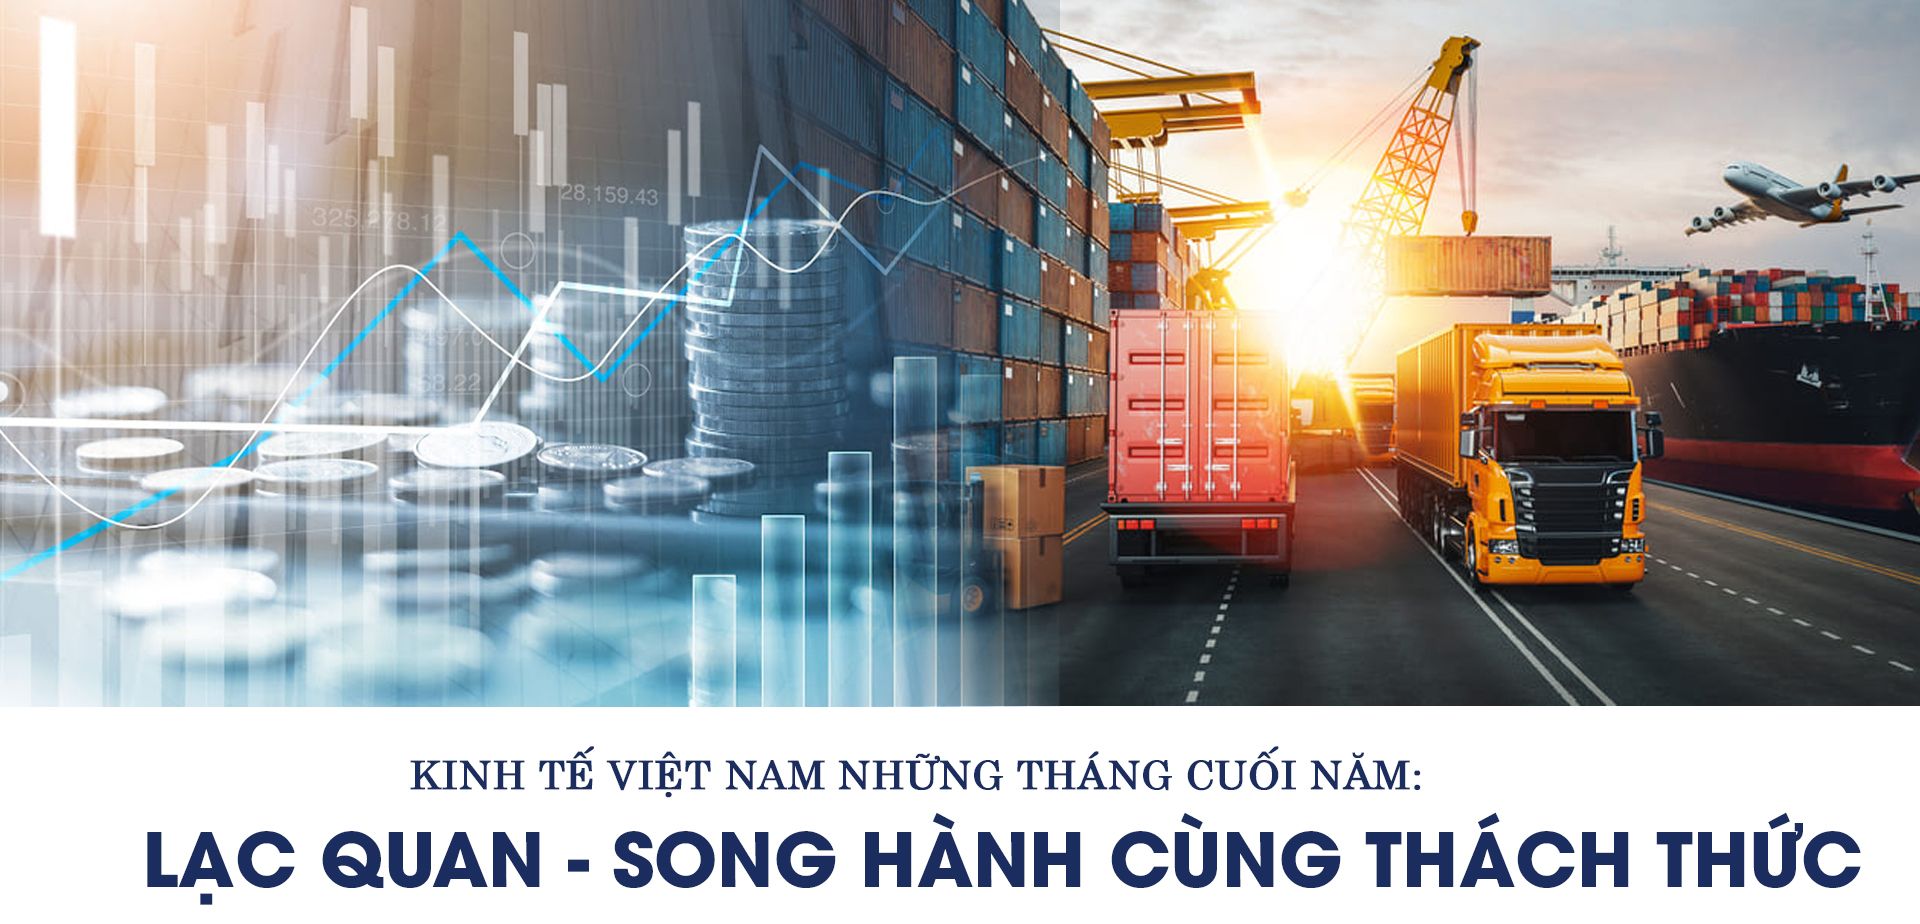 Kinh tế Việt Nam những tháng cuối năm: Lạc quan song hành cùng thách thức